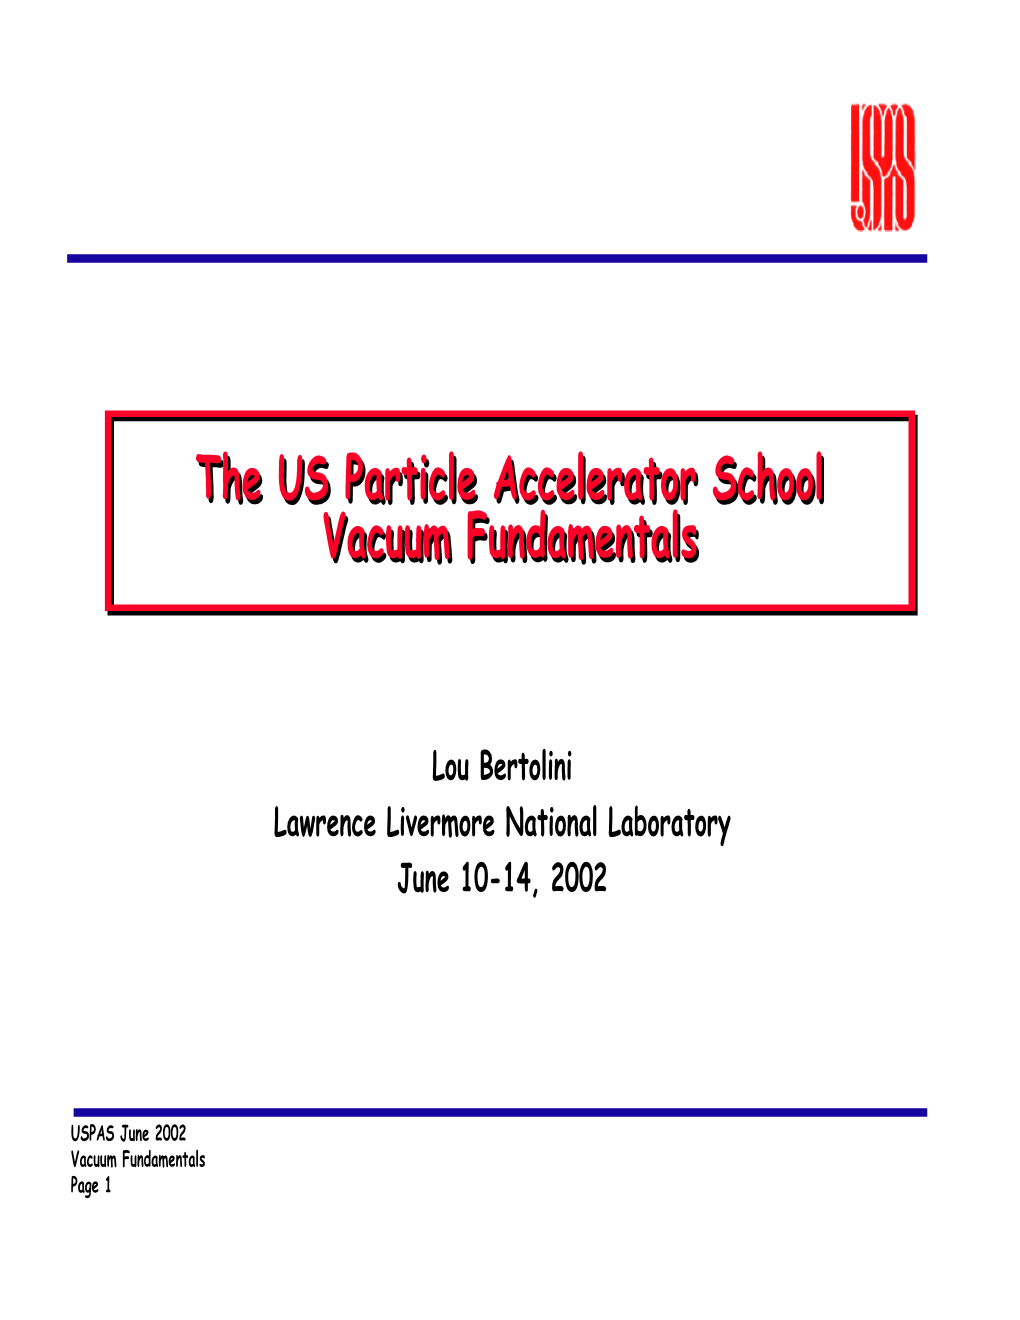 The US Particle Accelerator School Vacuum Fundamentals